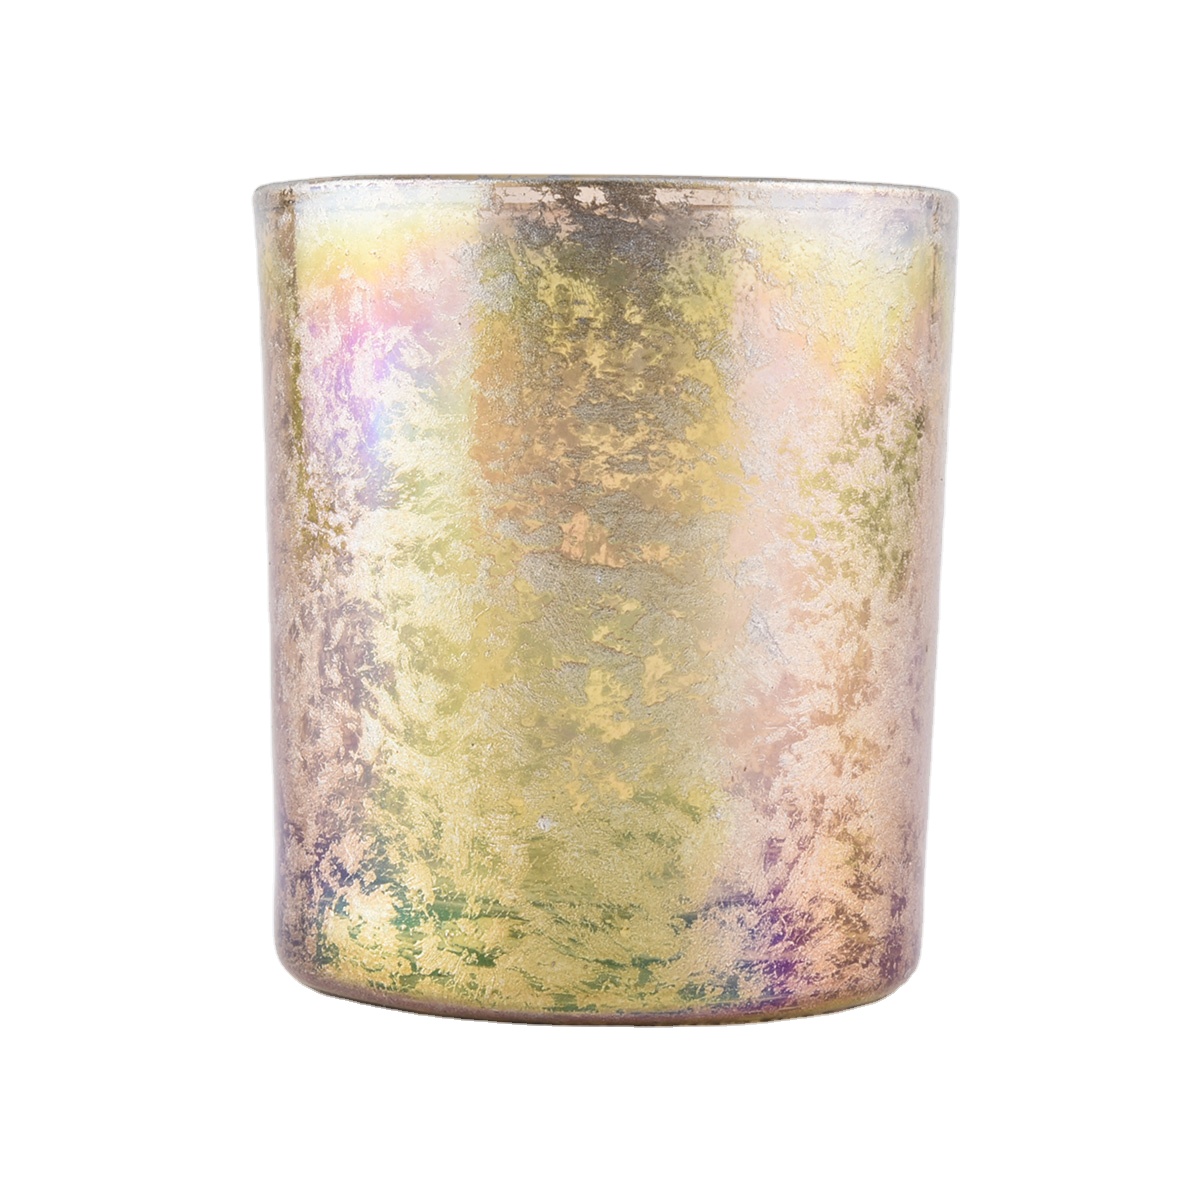 Bulk luxury votive custom finish cylinder gold candle glass holders